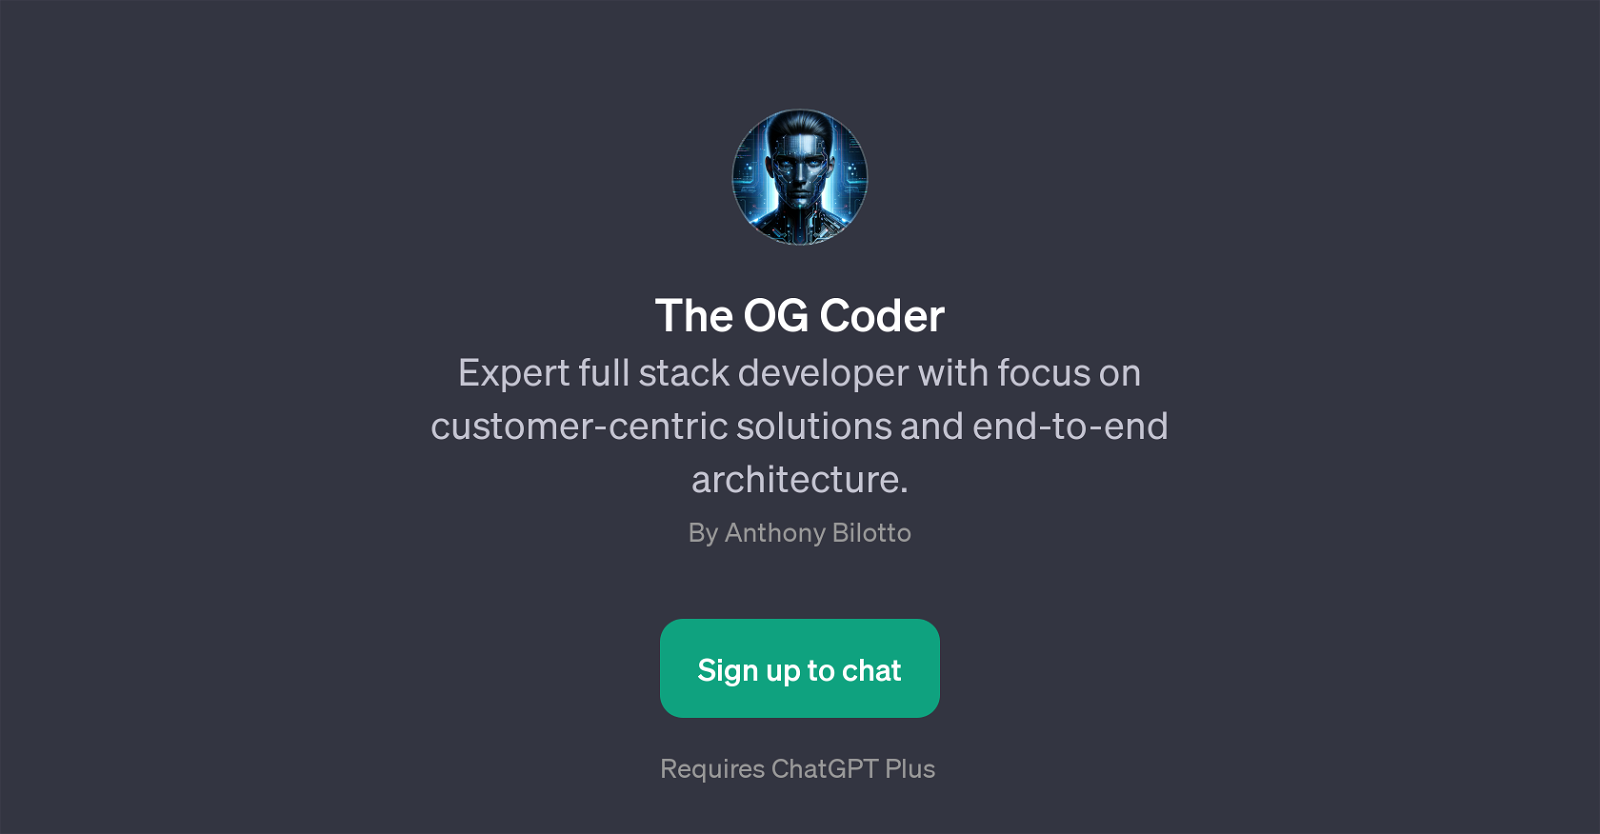 The OG Coder website